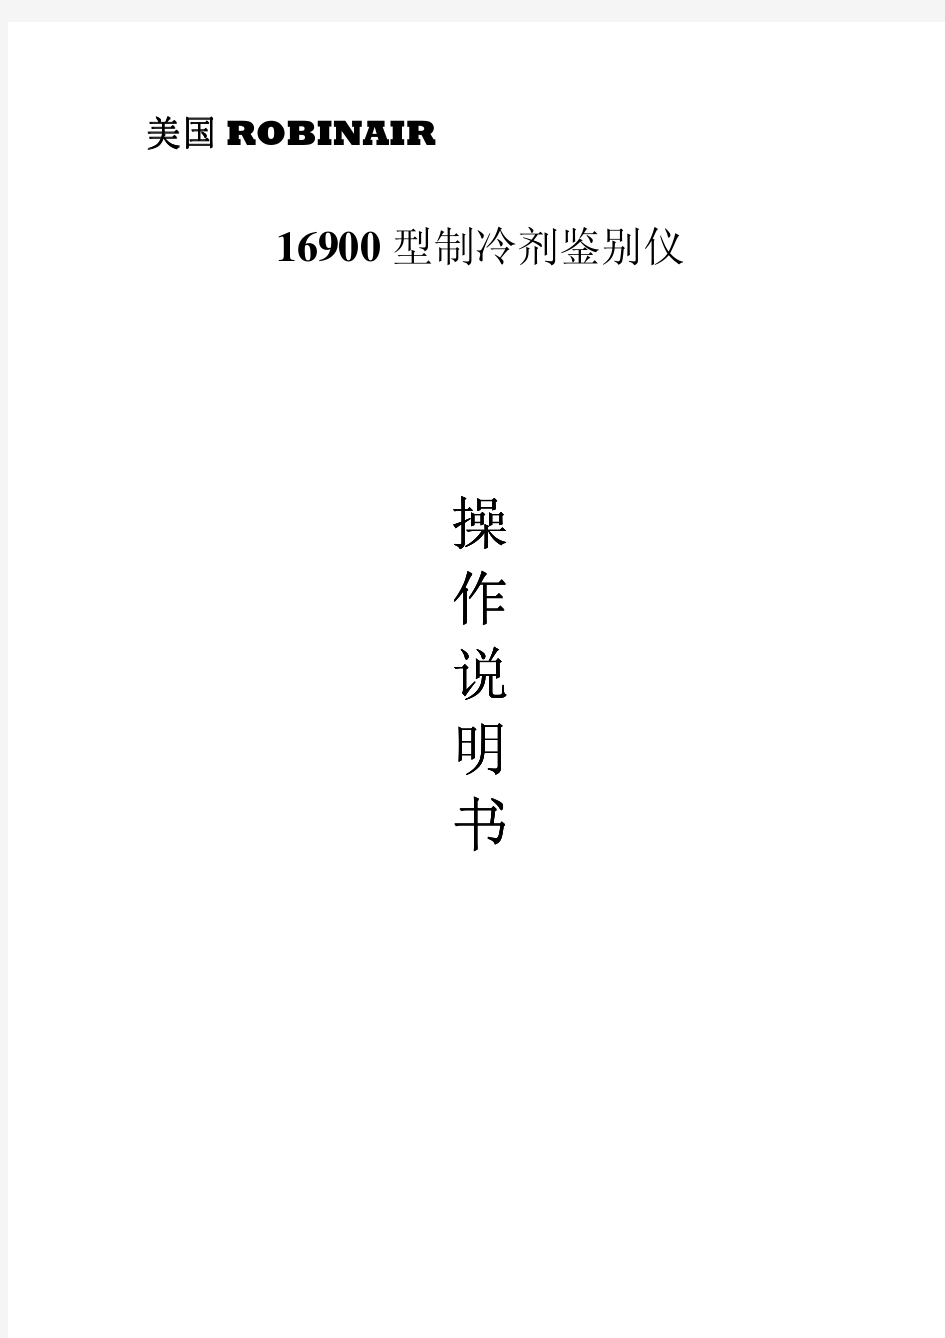 罗宾耐尔仪器说明16900冷媒鉴别仪中文说明书